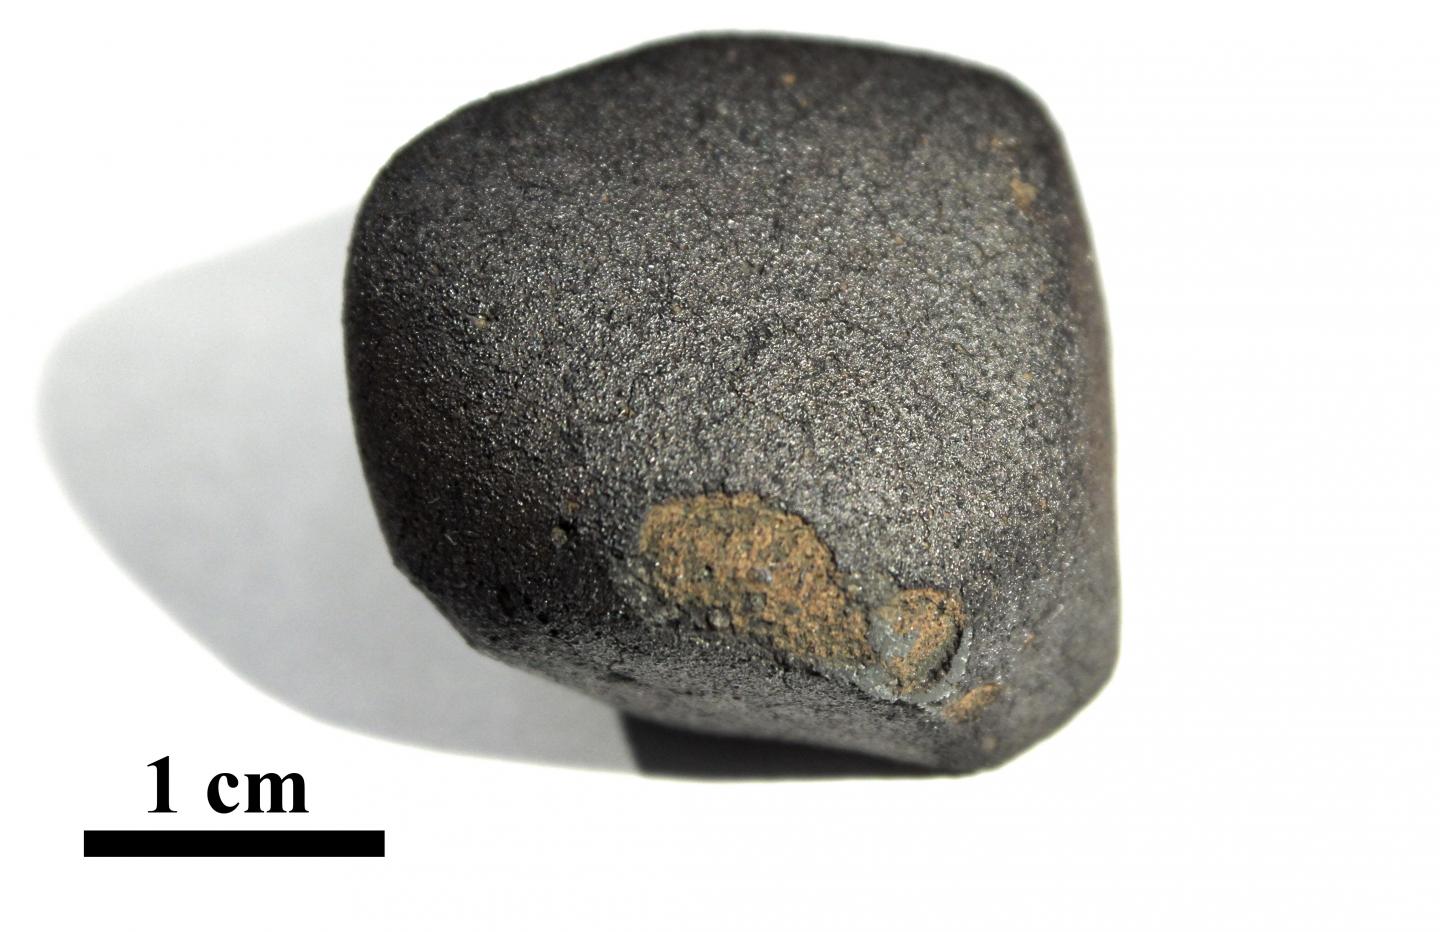 Flensburg meteorite